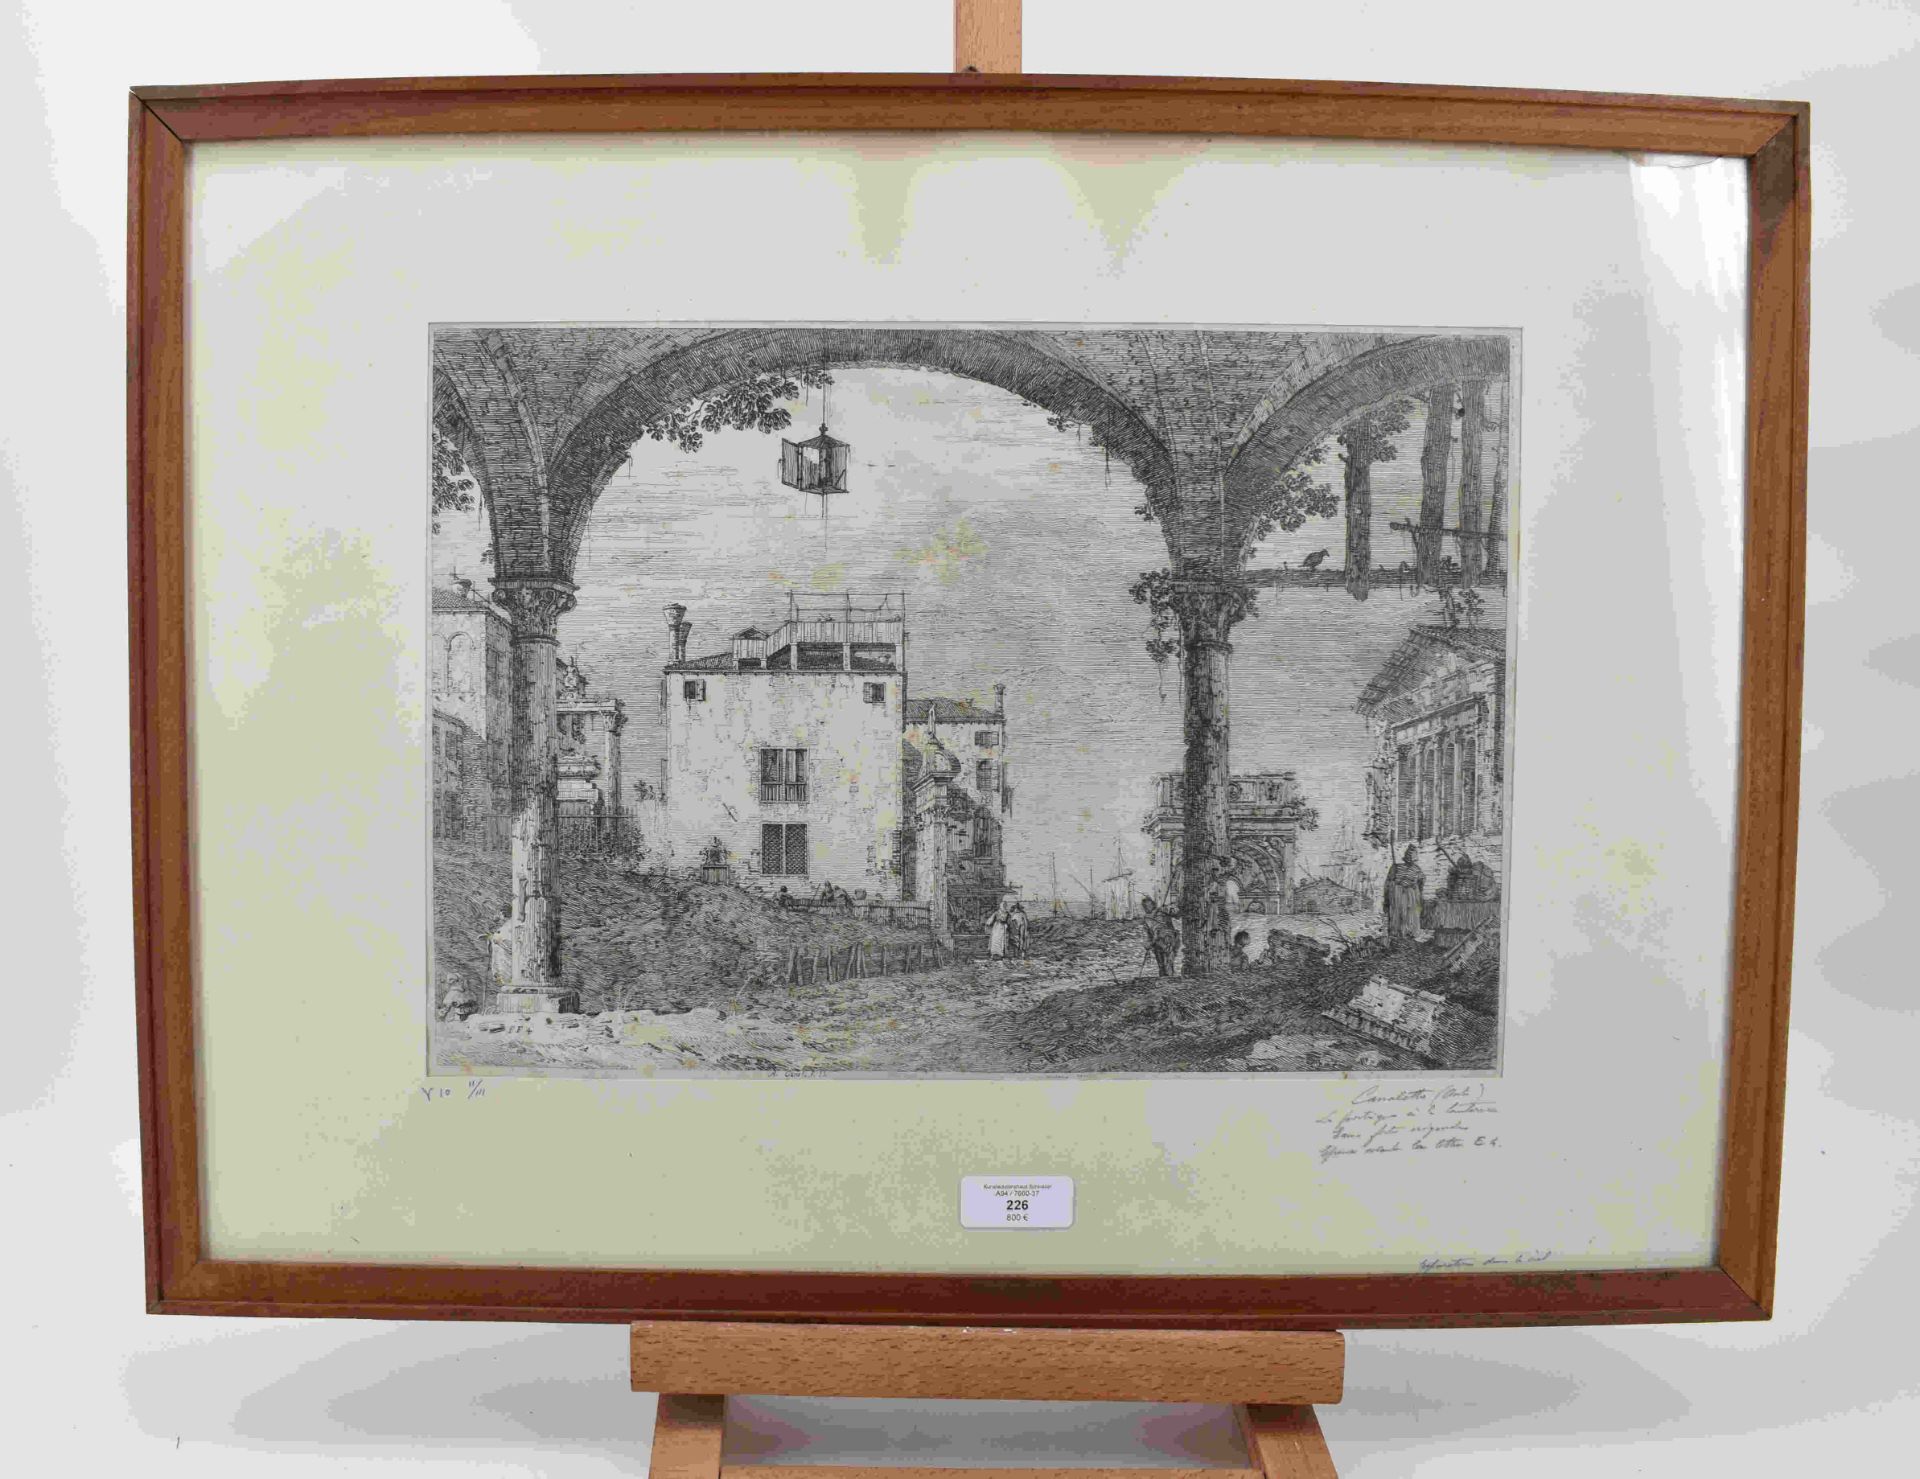 Canal, Giovanni Antonio, gen. Canaletto: Il portico con la lanterna - Image 9 of 24